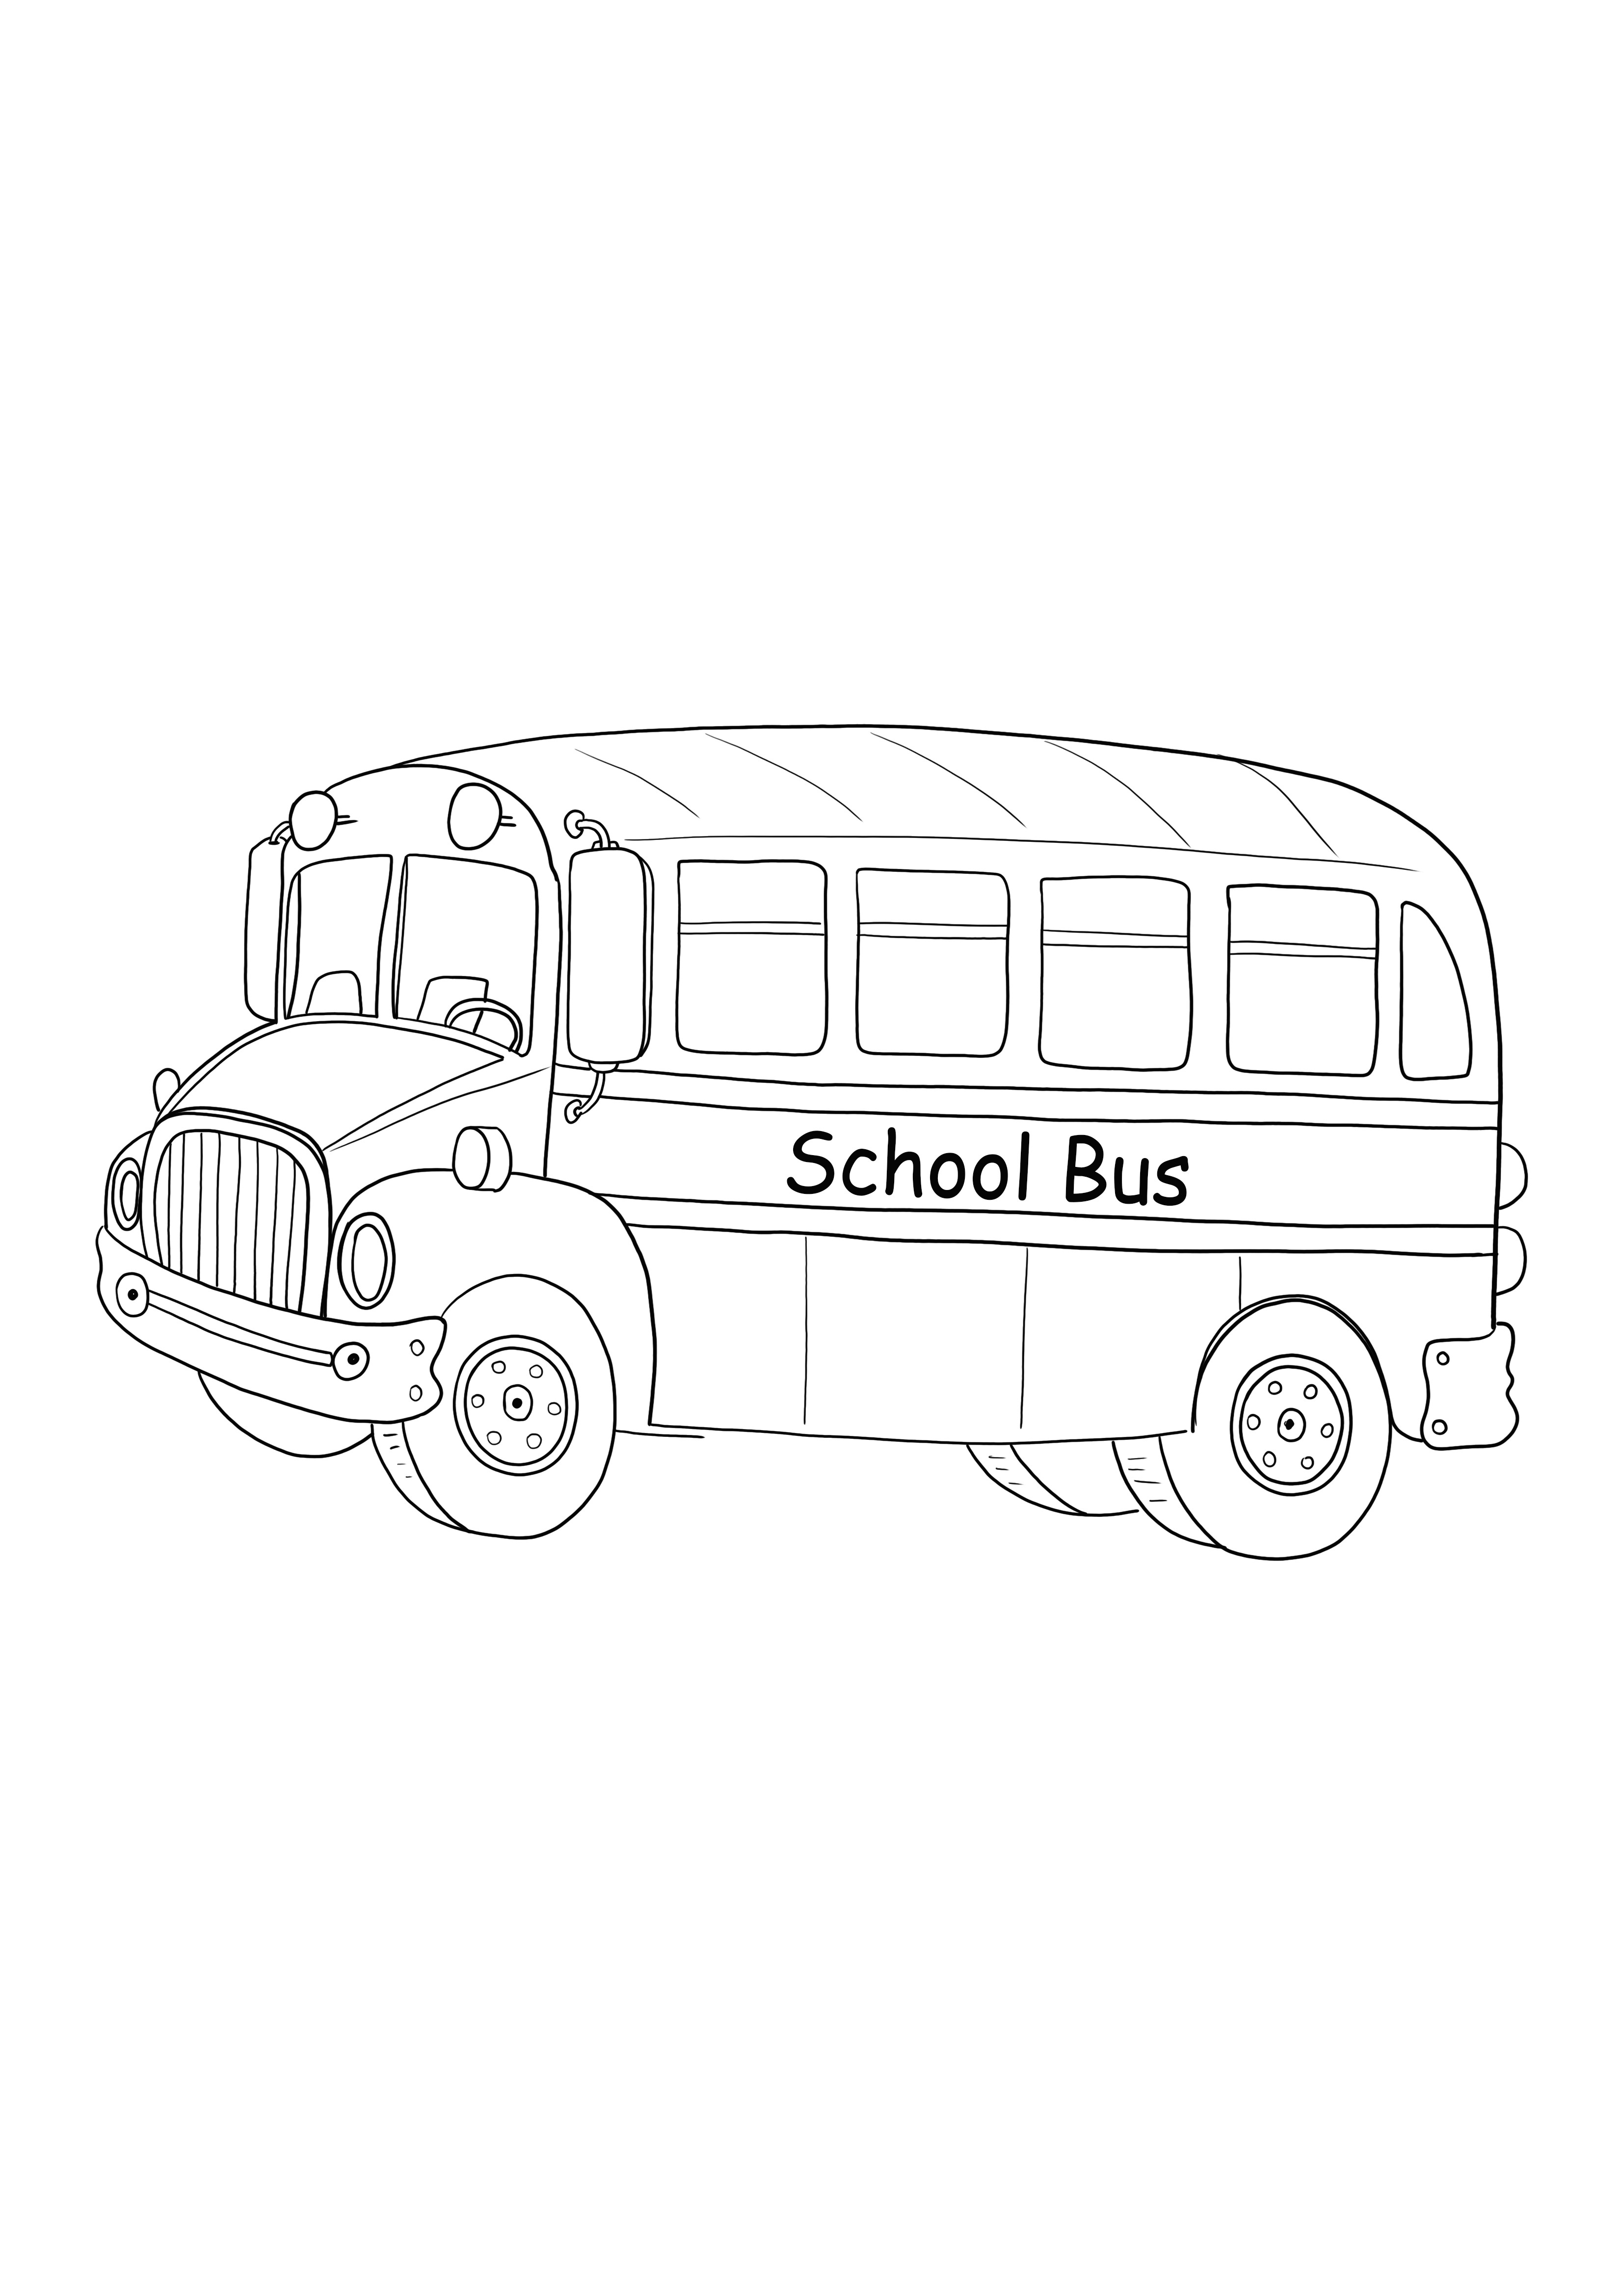 descarga e impresión gratuita del autobús de la vieja escuela